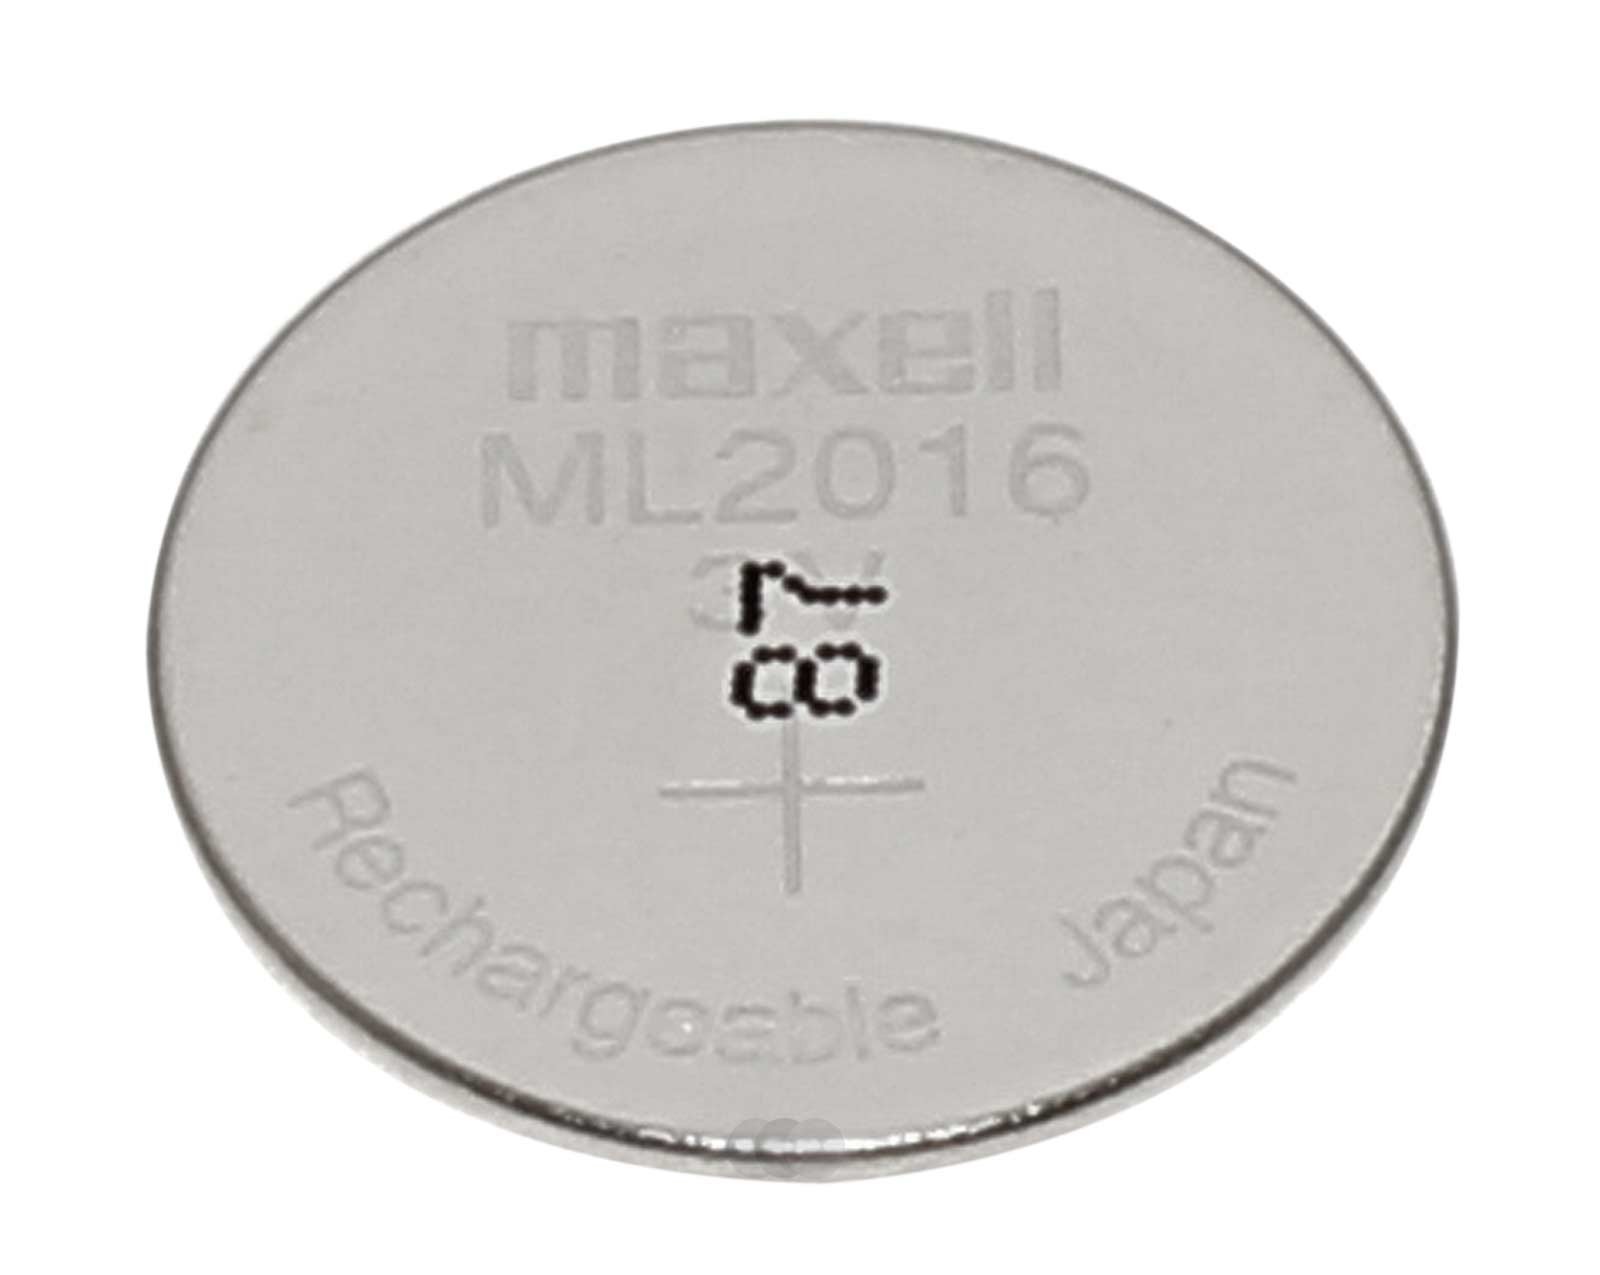 Maxell ML2016 (CR2016) Knopfzellenakku, wiederaufladbare Knopfzellenbatterie mit 3V und 25mAh Kapazität